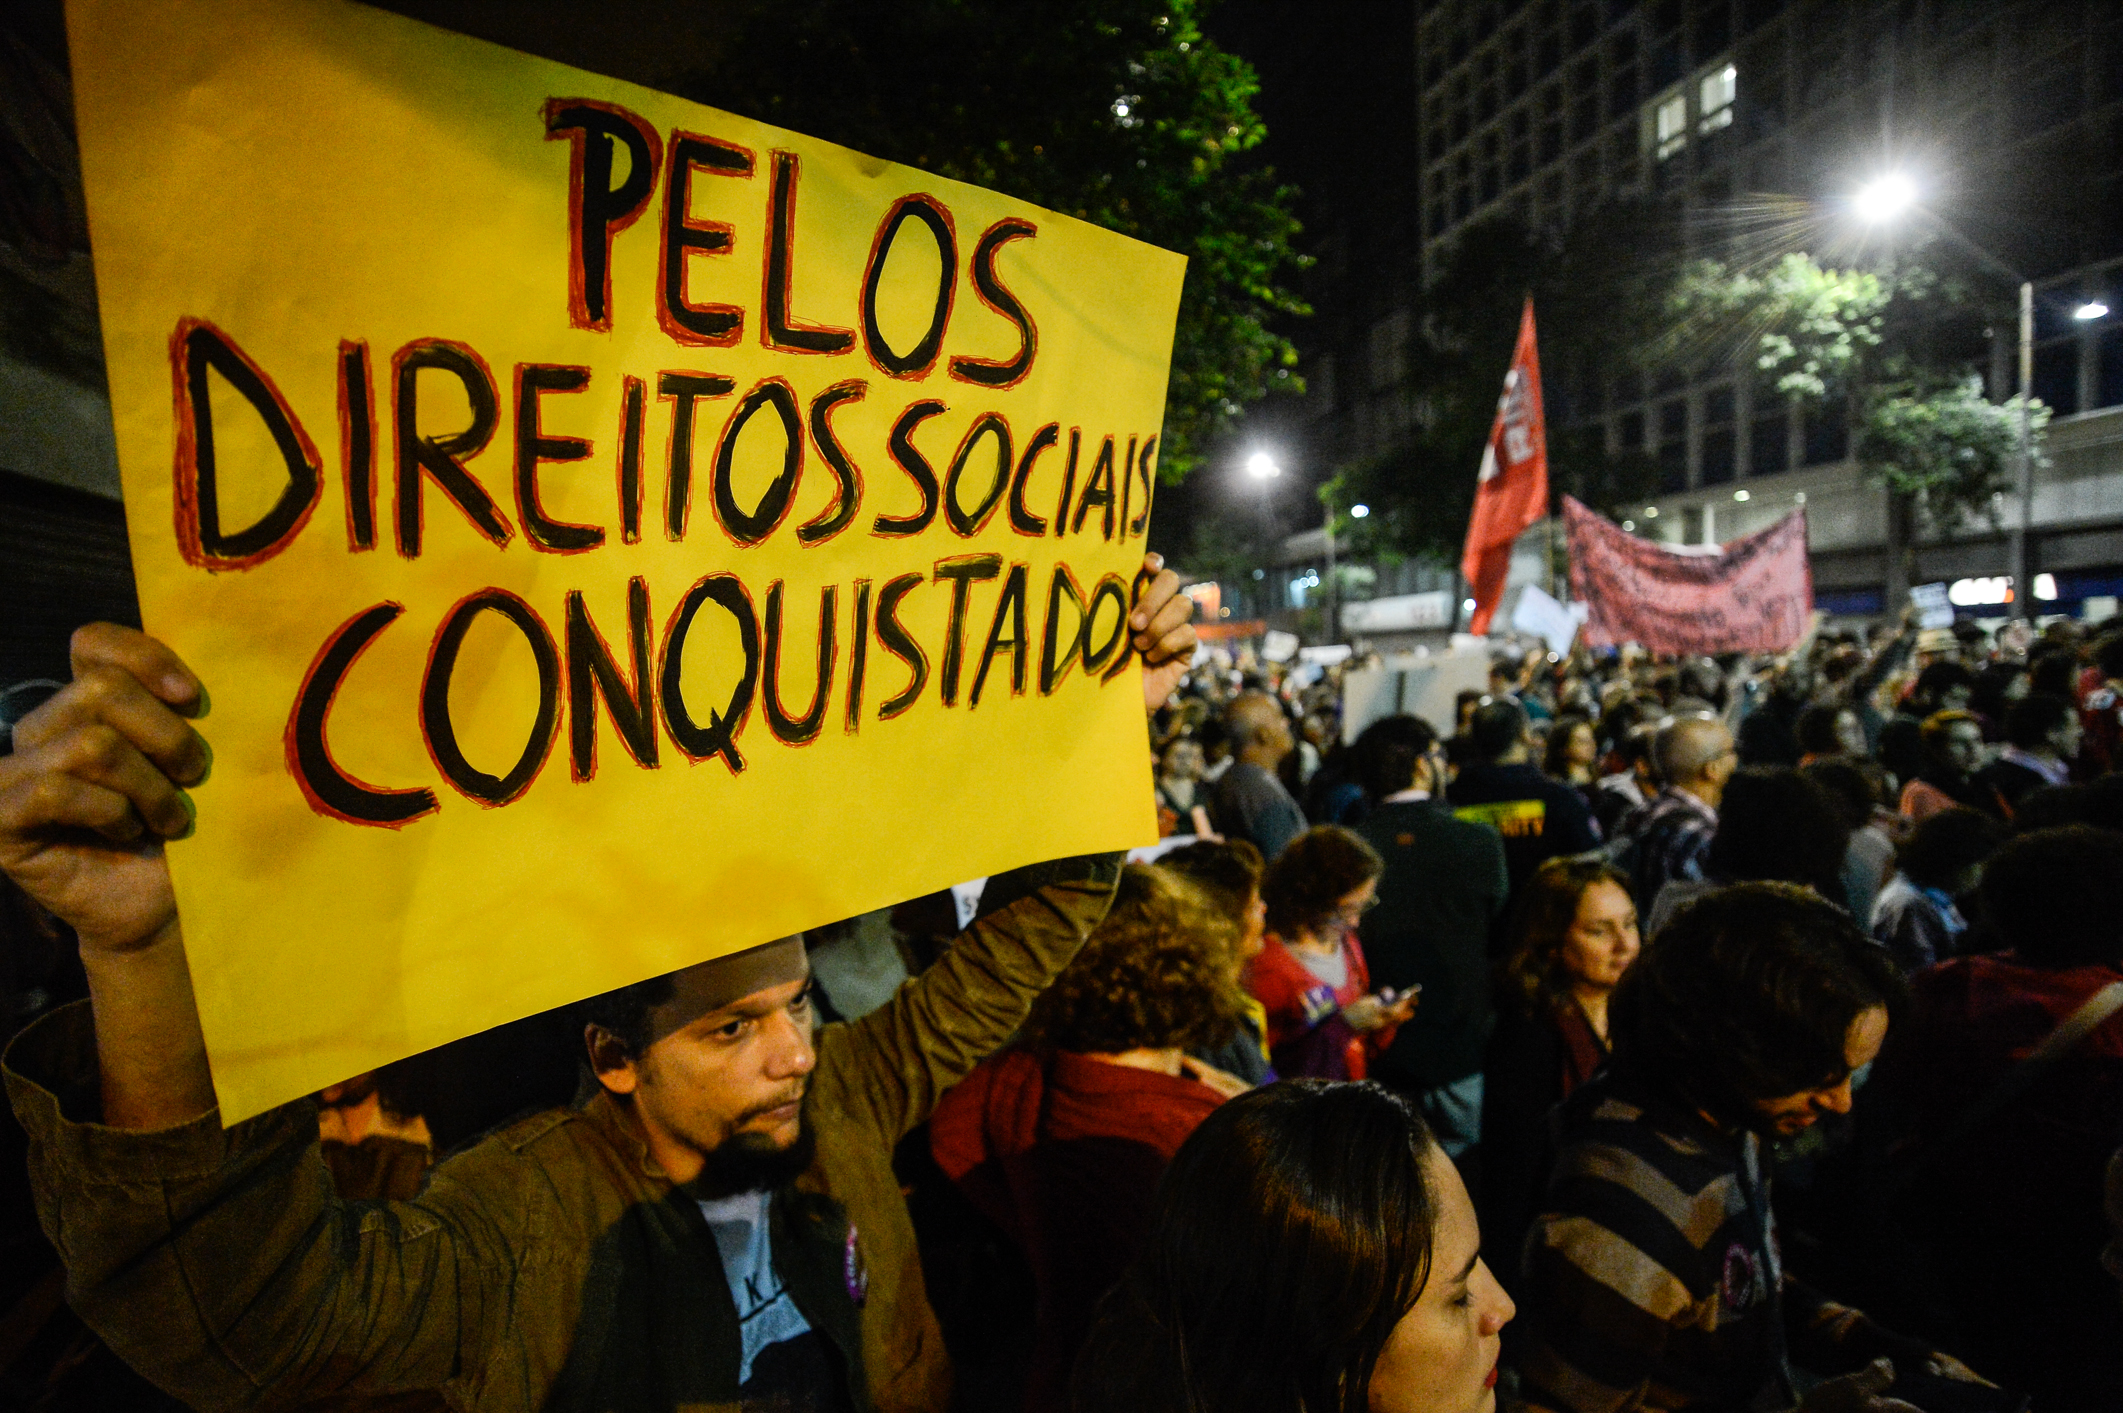 Yagoo Moura: A saída para a crise é pela esquerda